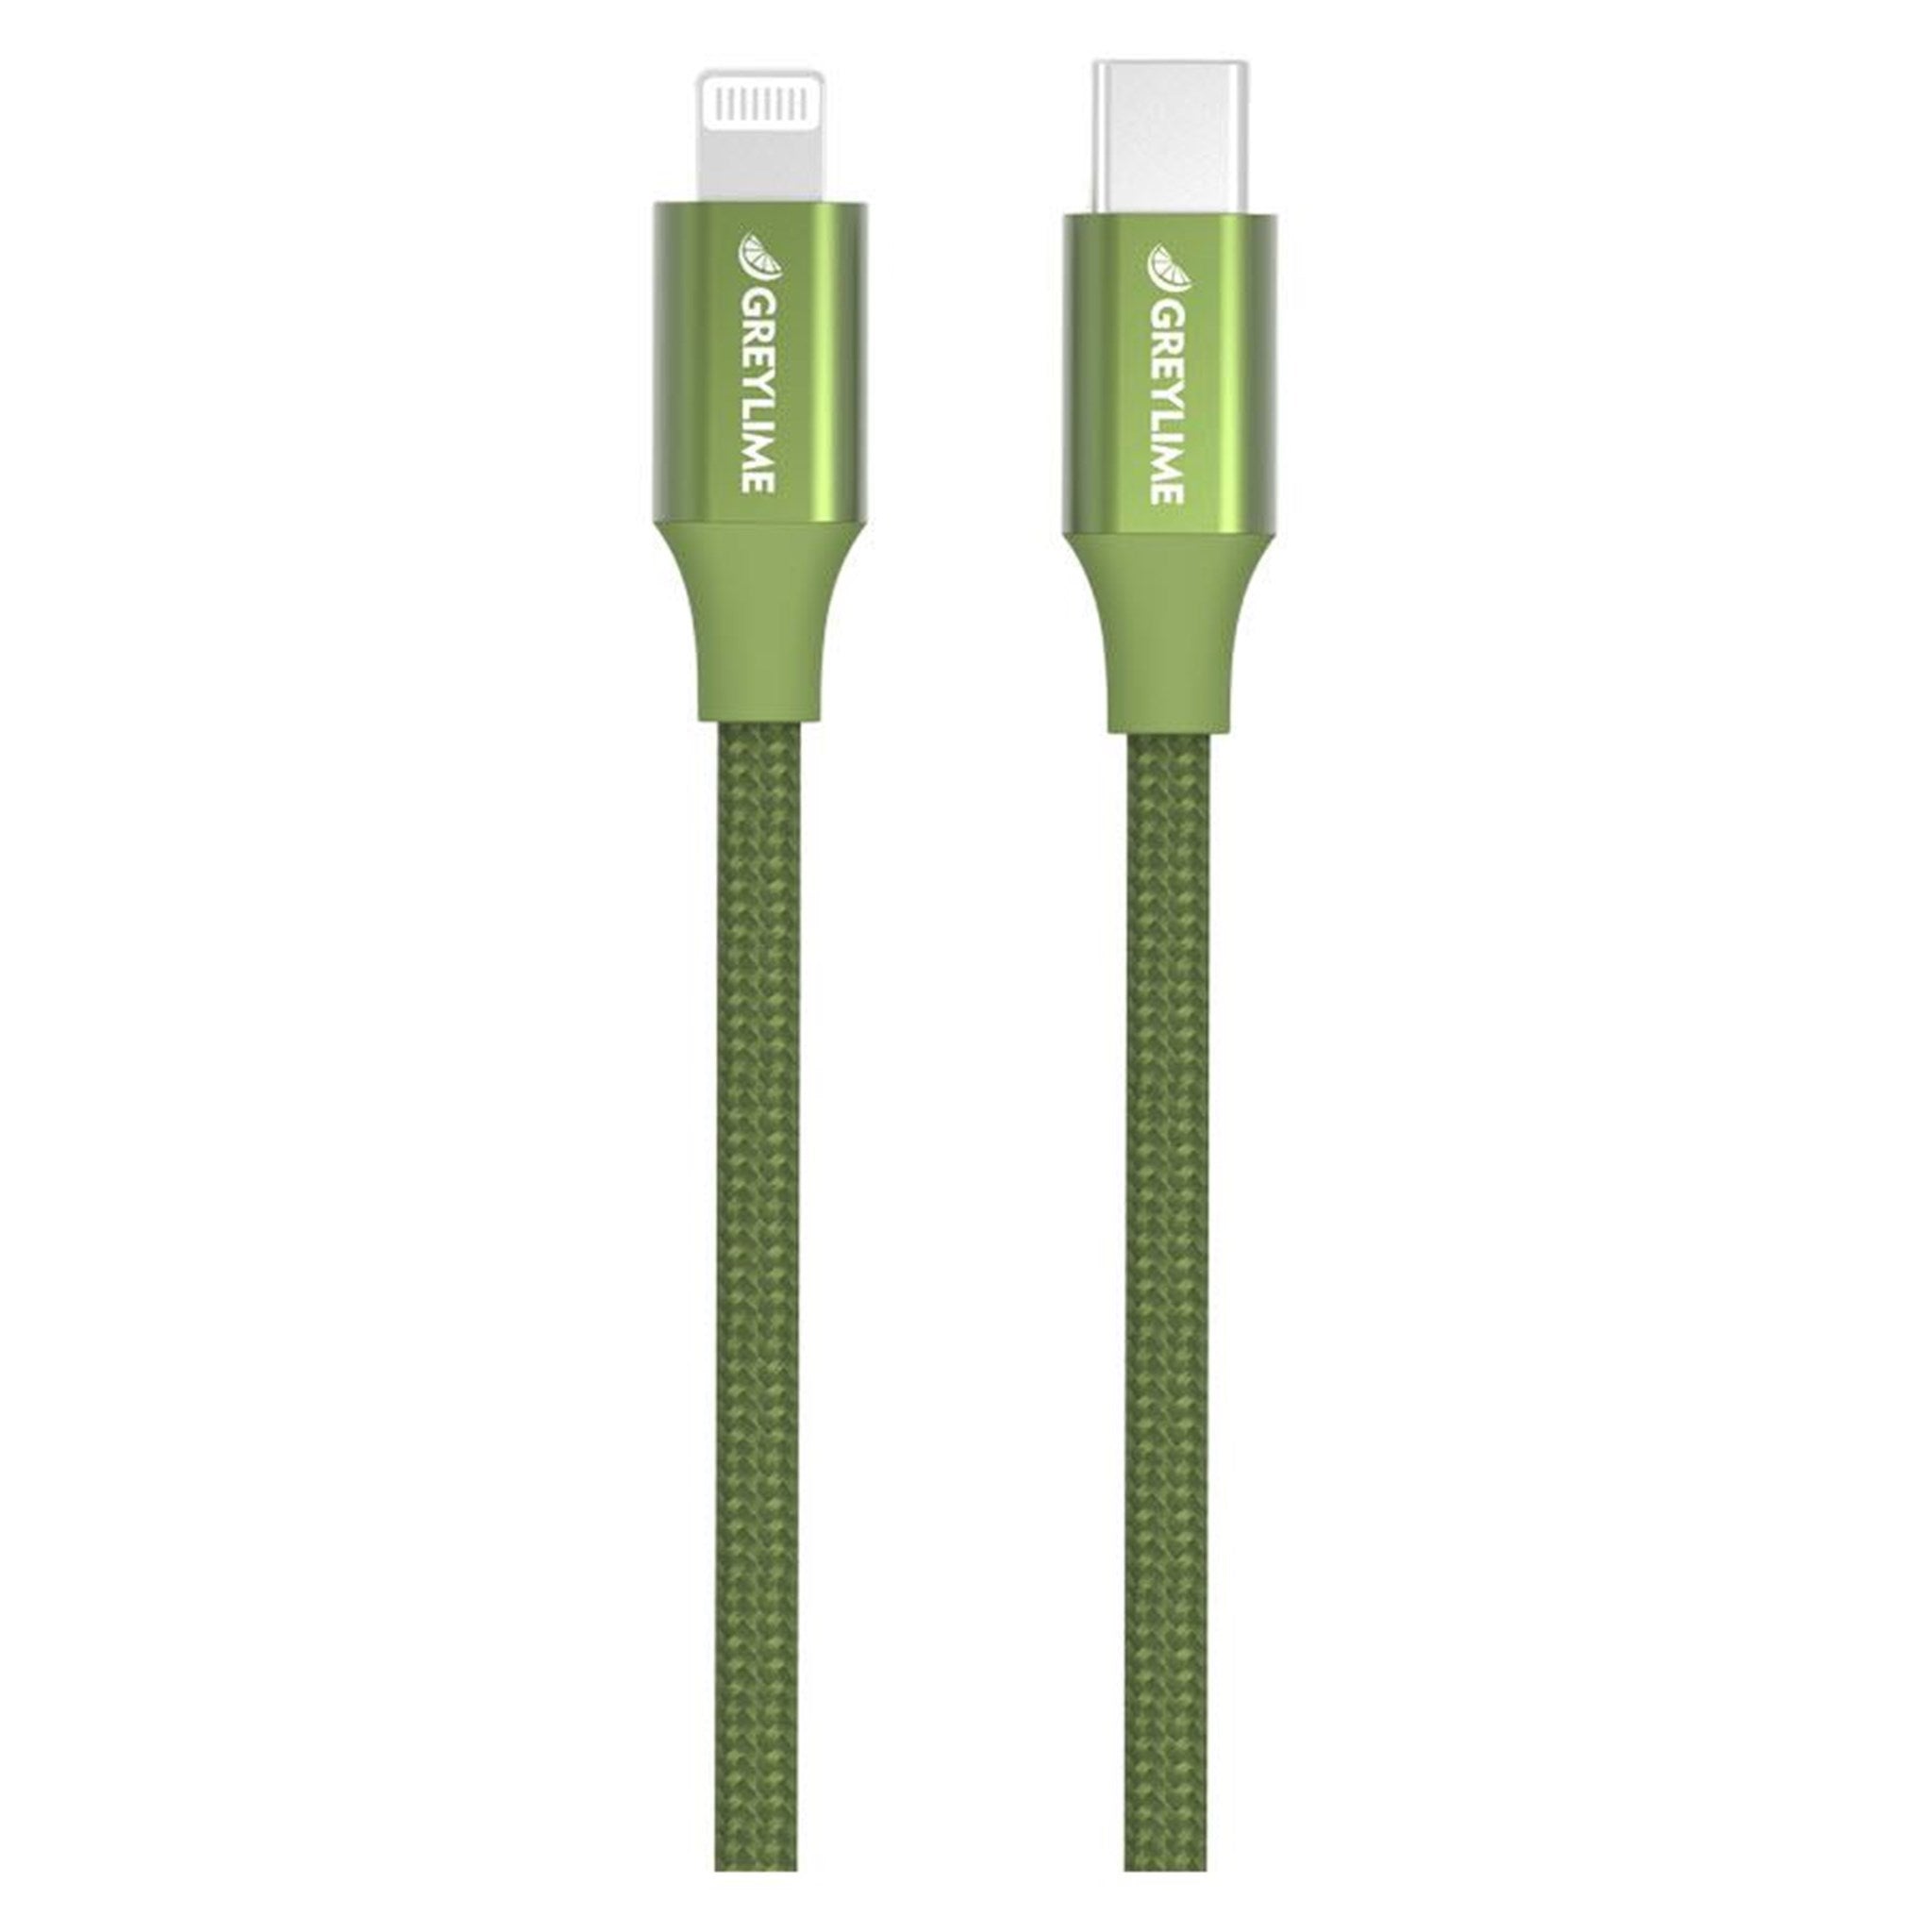 Billede af GreyLime Braided USB-C til MFi Lightning Kabel Grøn 1 m hos GreyLime